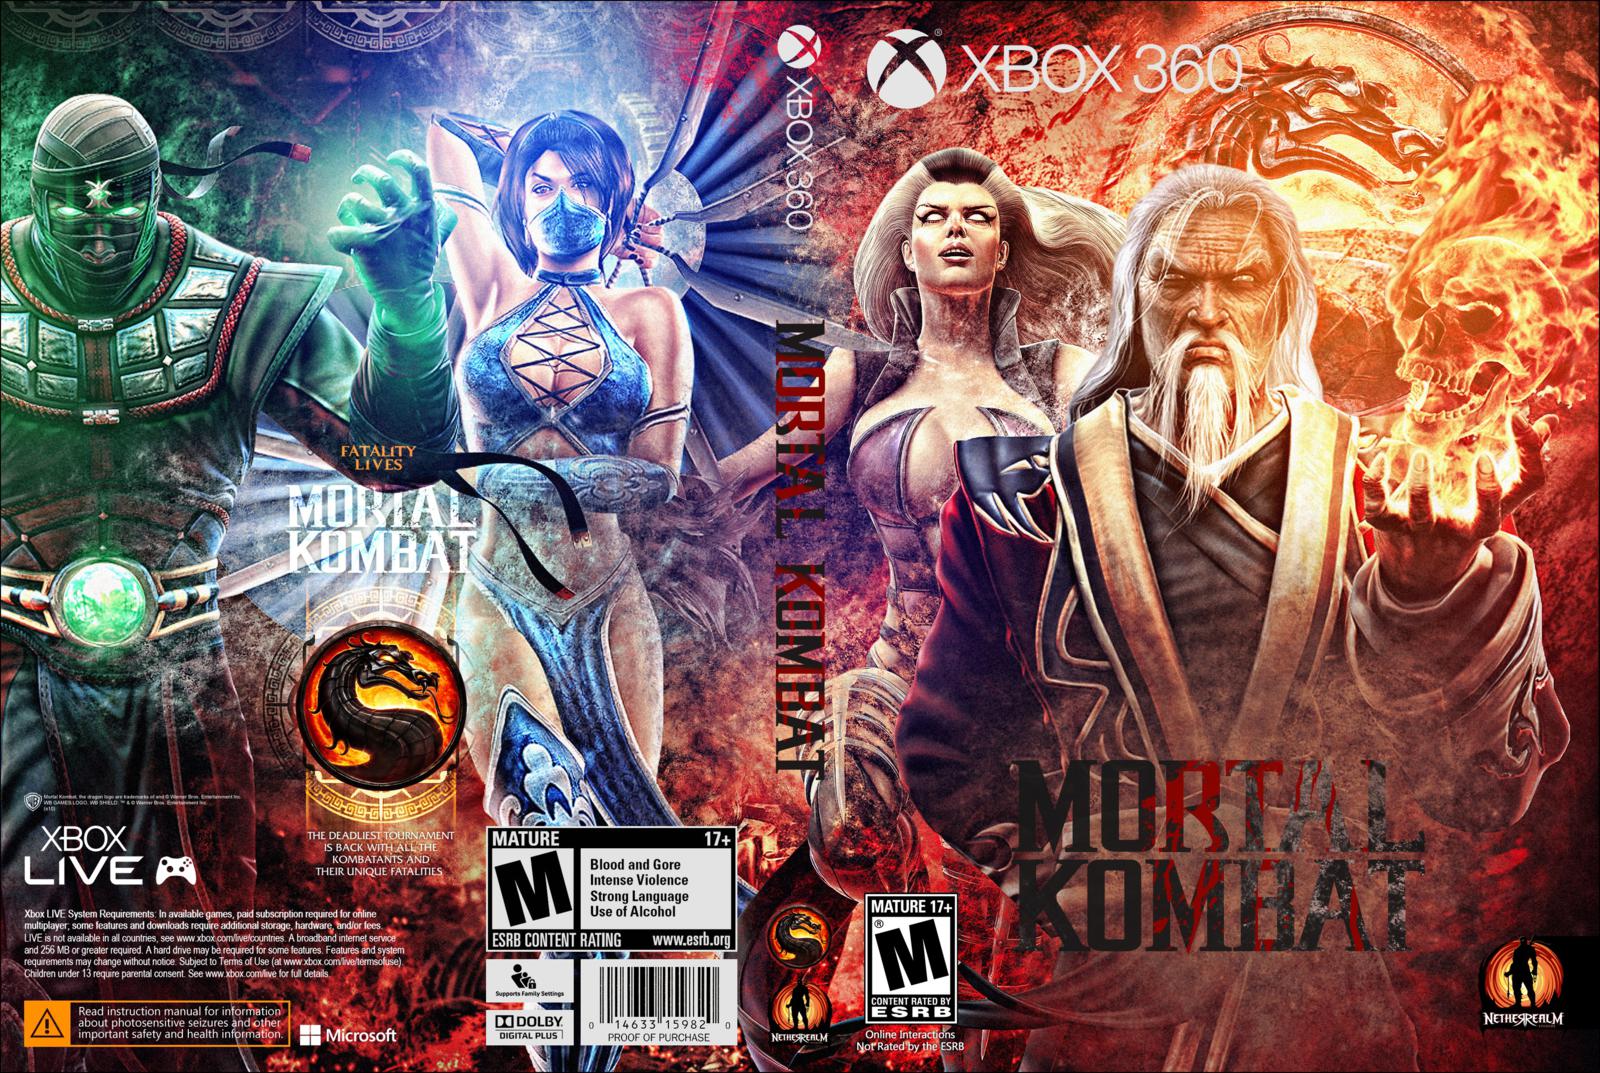 Мортал комбат на xbox 360 freeboot. Мортал комбат на Xbox 360. Mortal Kombat Xbox 360 обложка. Мортал комбат на хбокс 360. Mortal Kombat 11 Xbox 360.